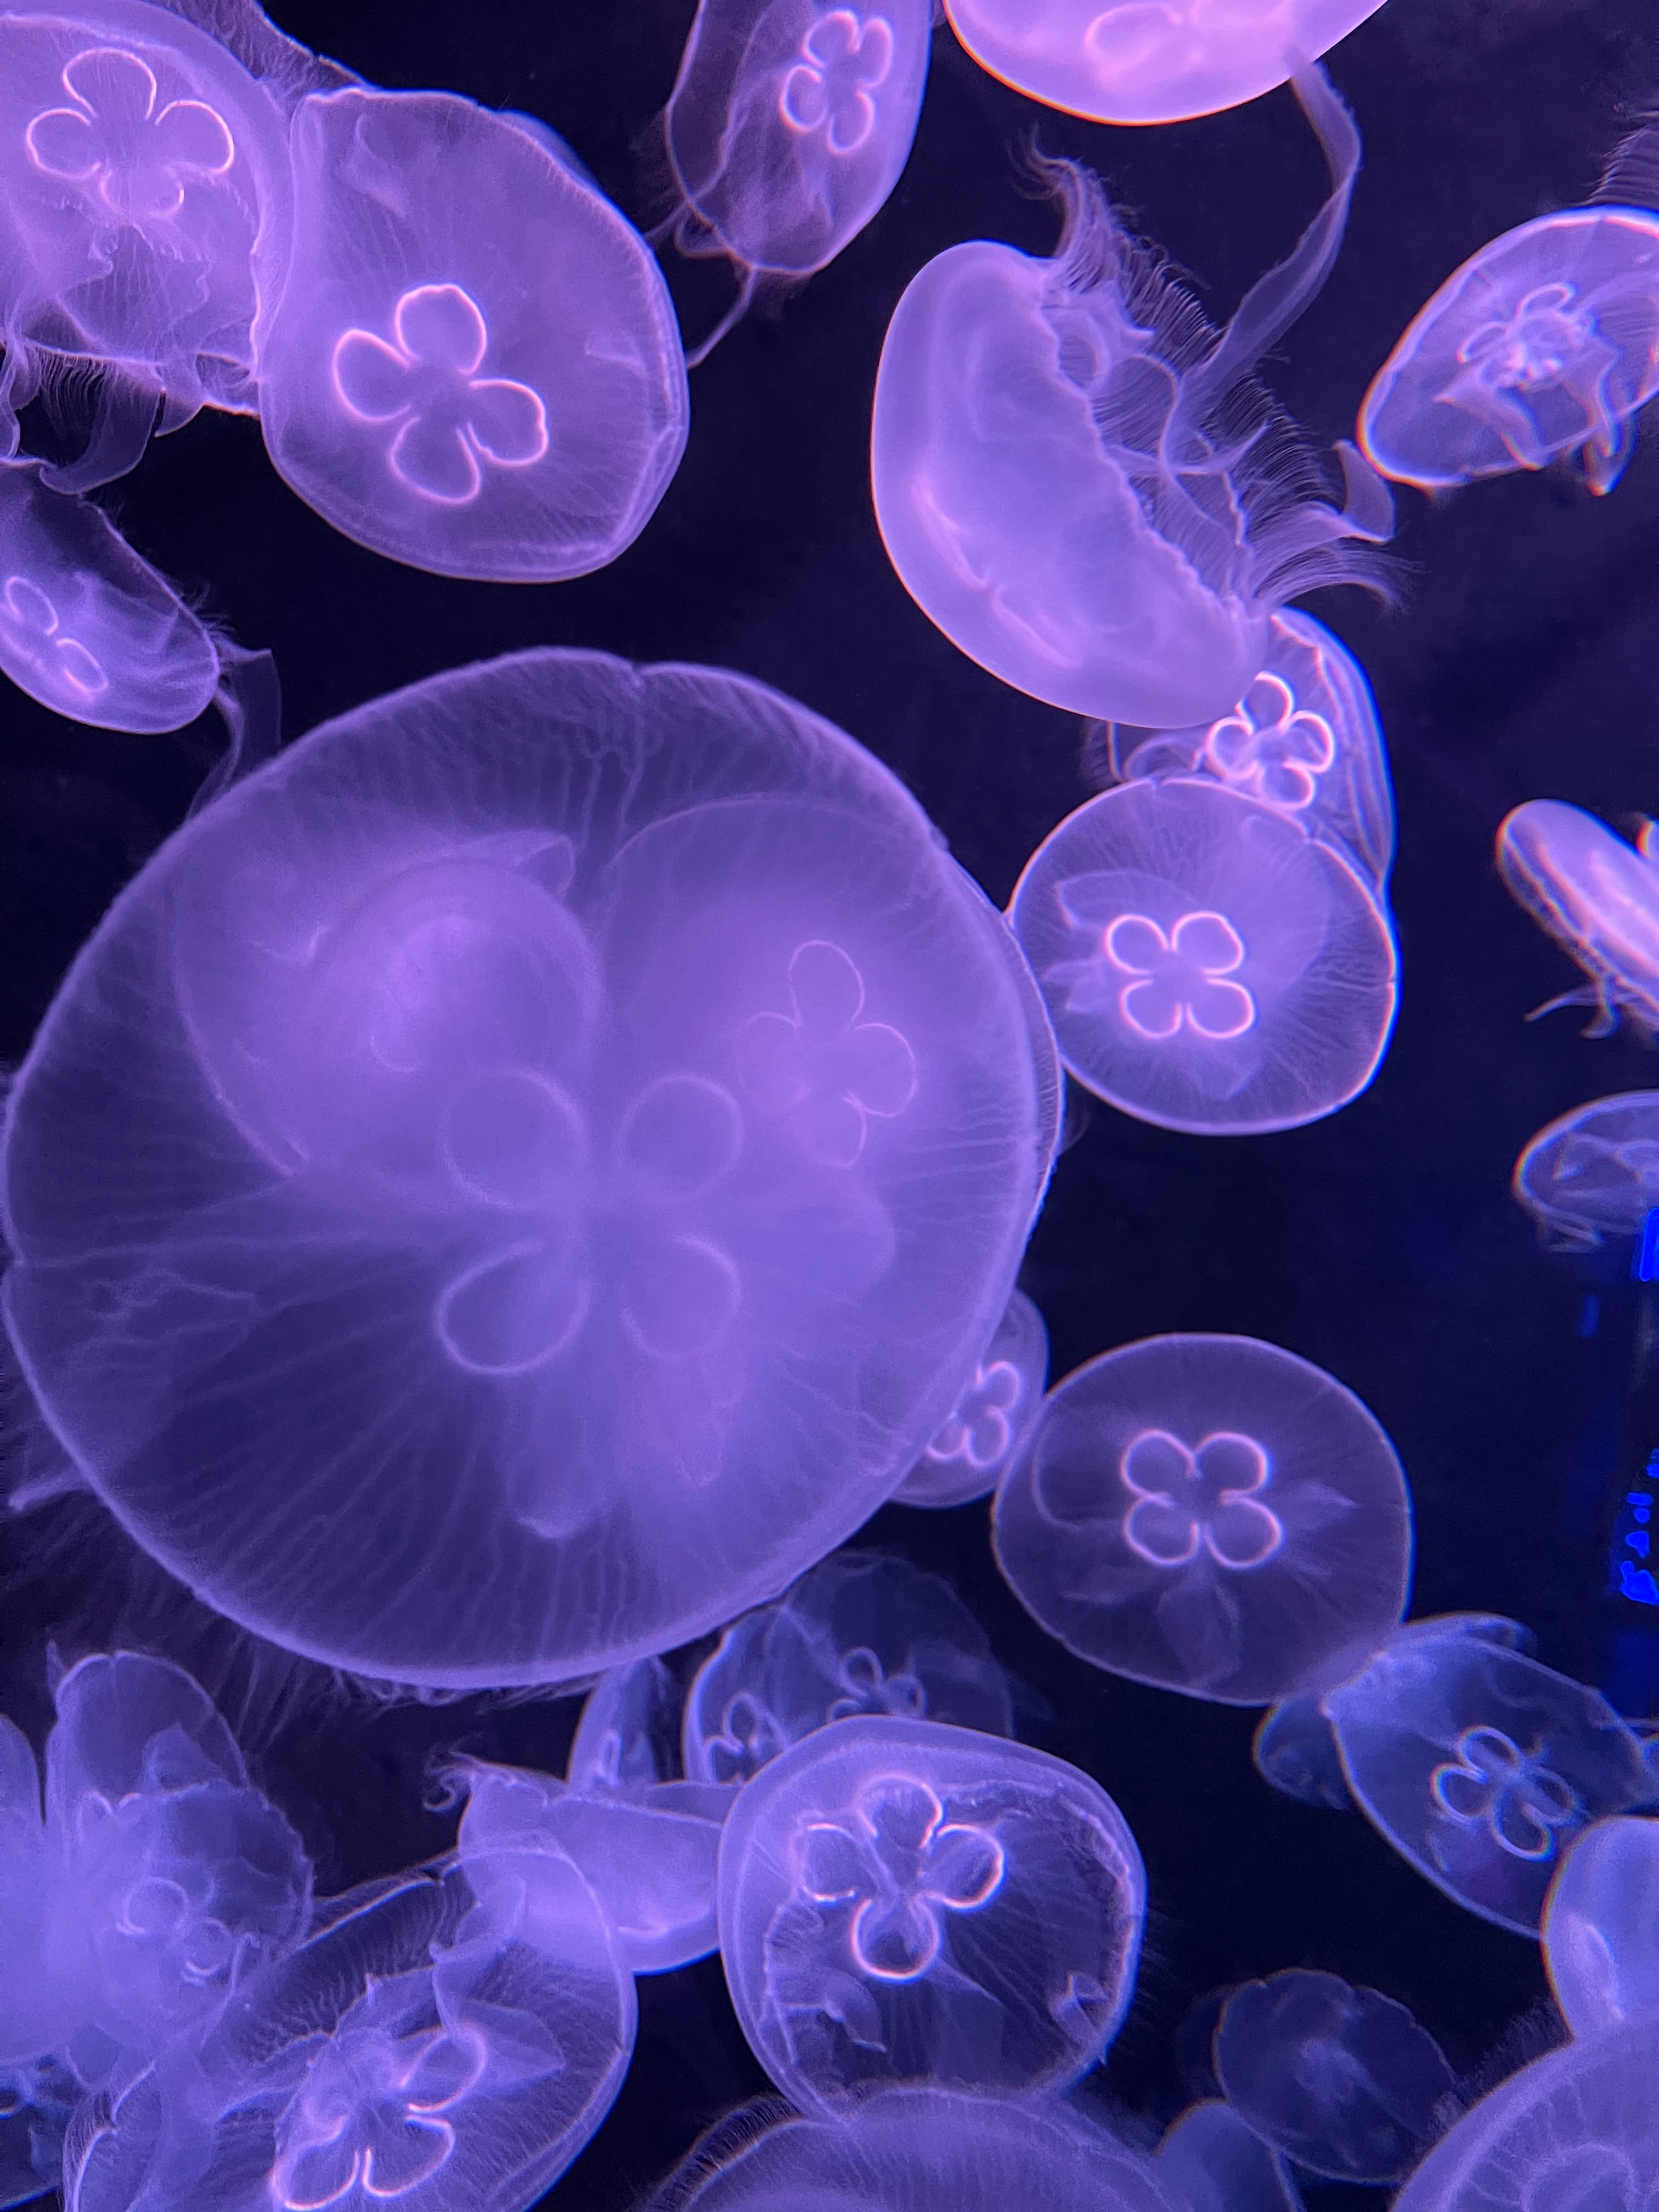 jellyfish, underwater, animals, water, violet, purple, under water